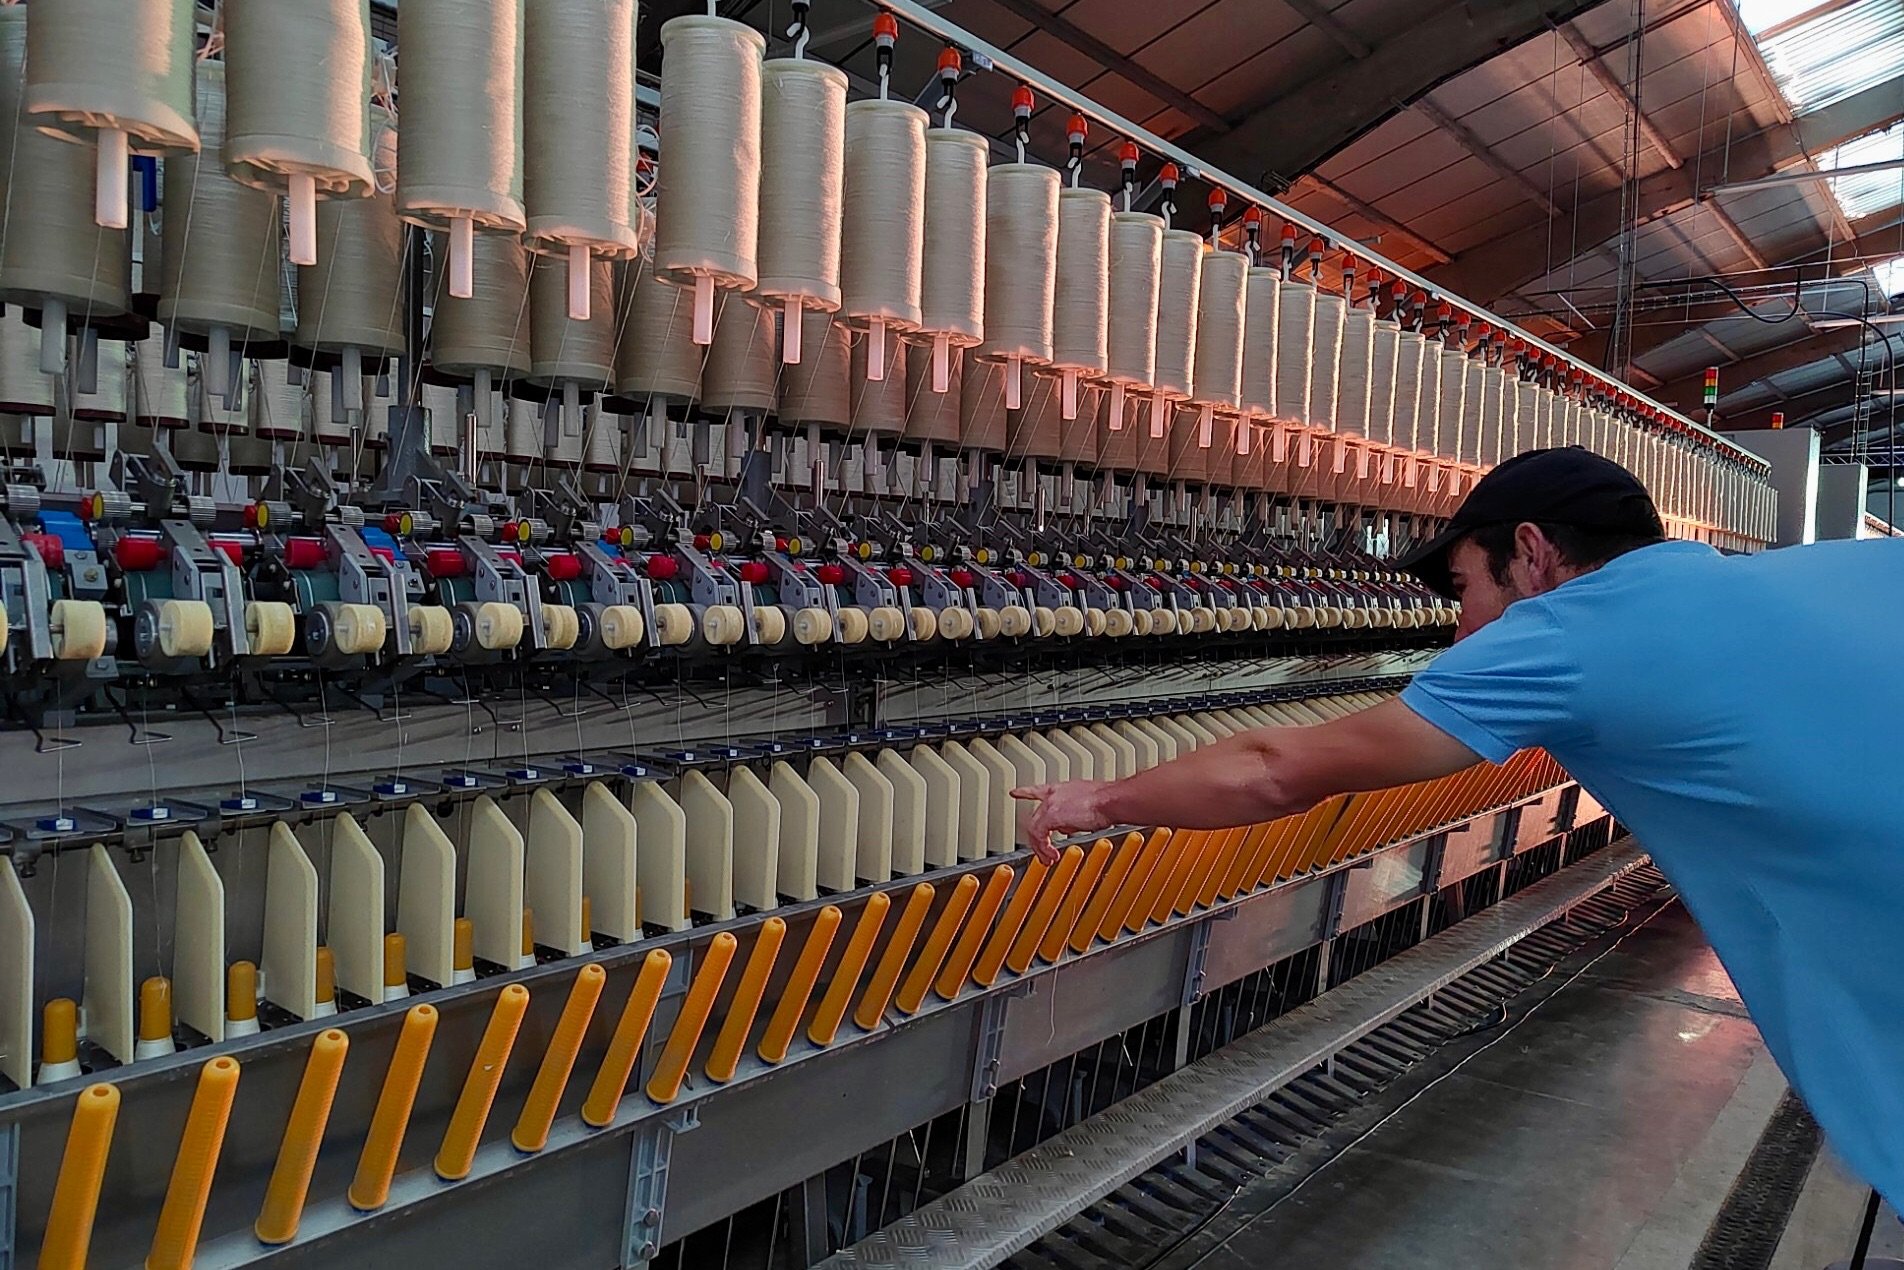 Le site de la French filature de Saint-Martin-du-Tilleul (Eure) prévoit de produire 250 tonnes de fil de lin au cours de sa première année d'exploitation. LP/Laurent Derouet